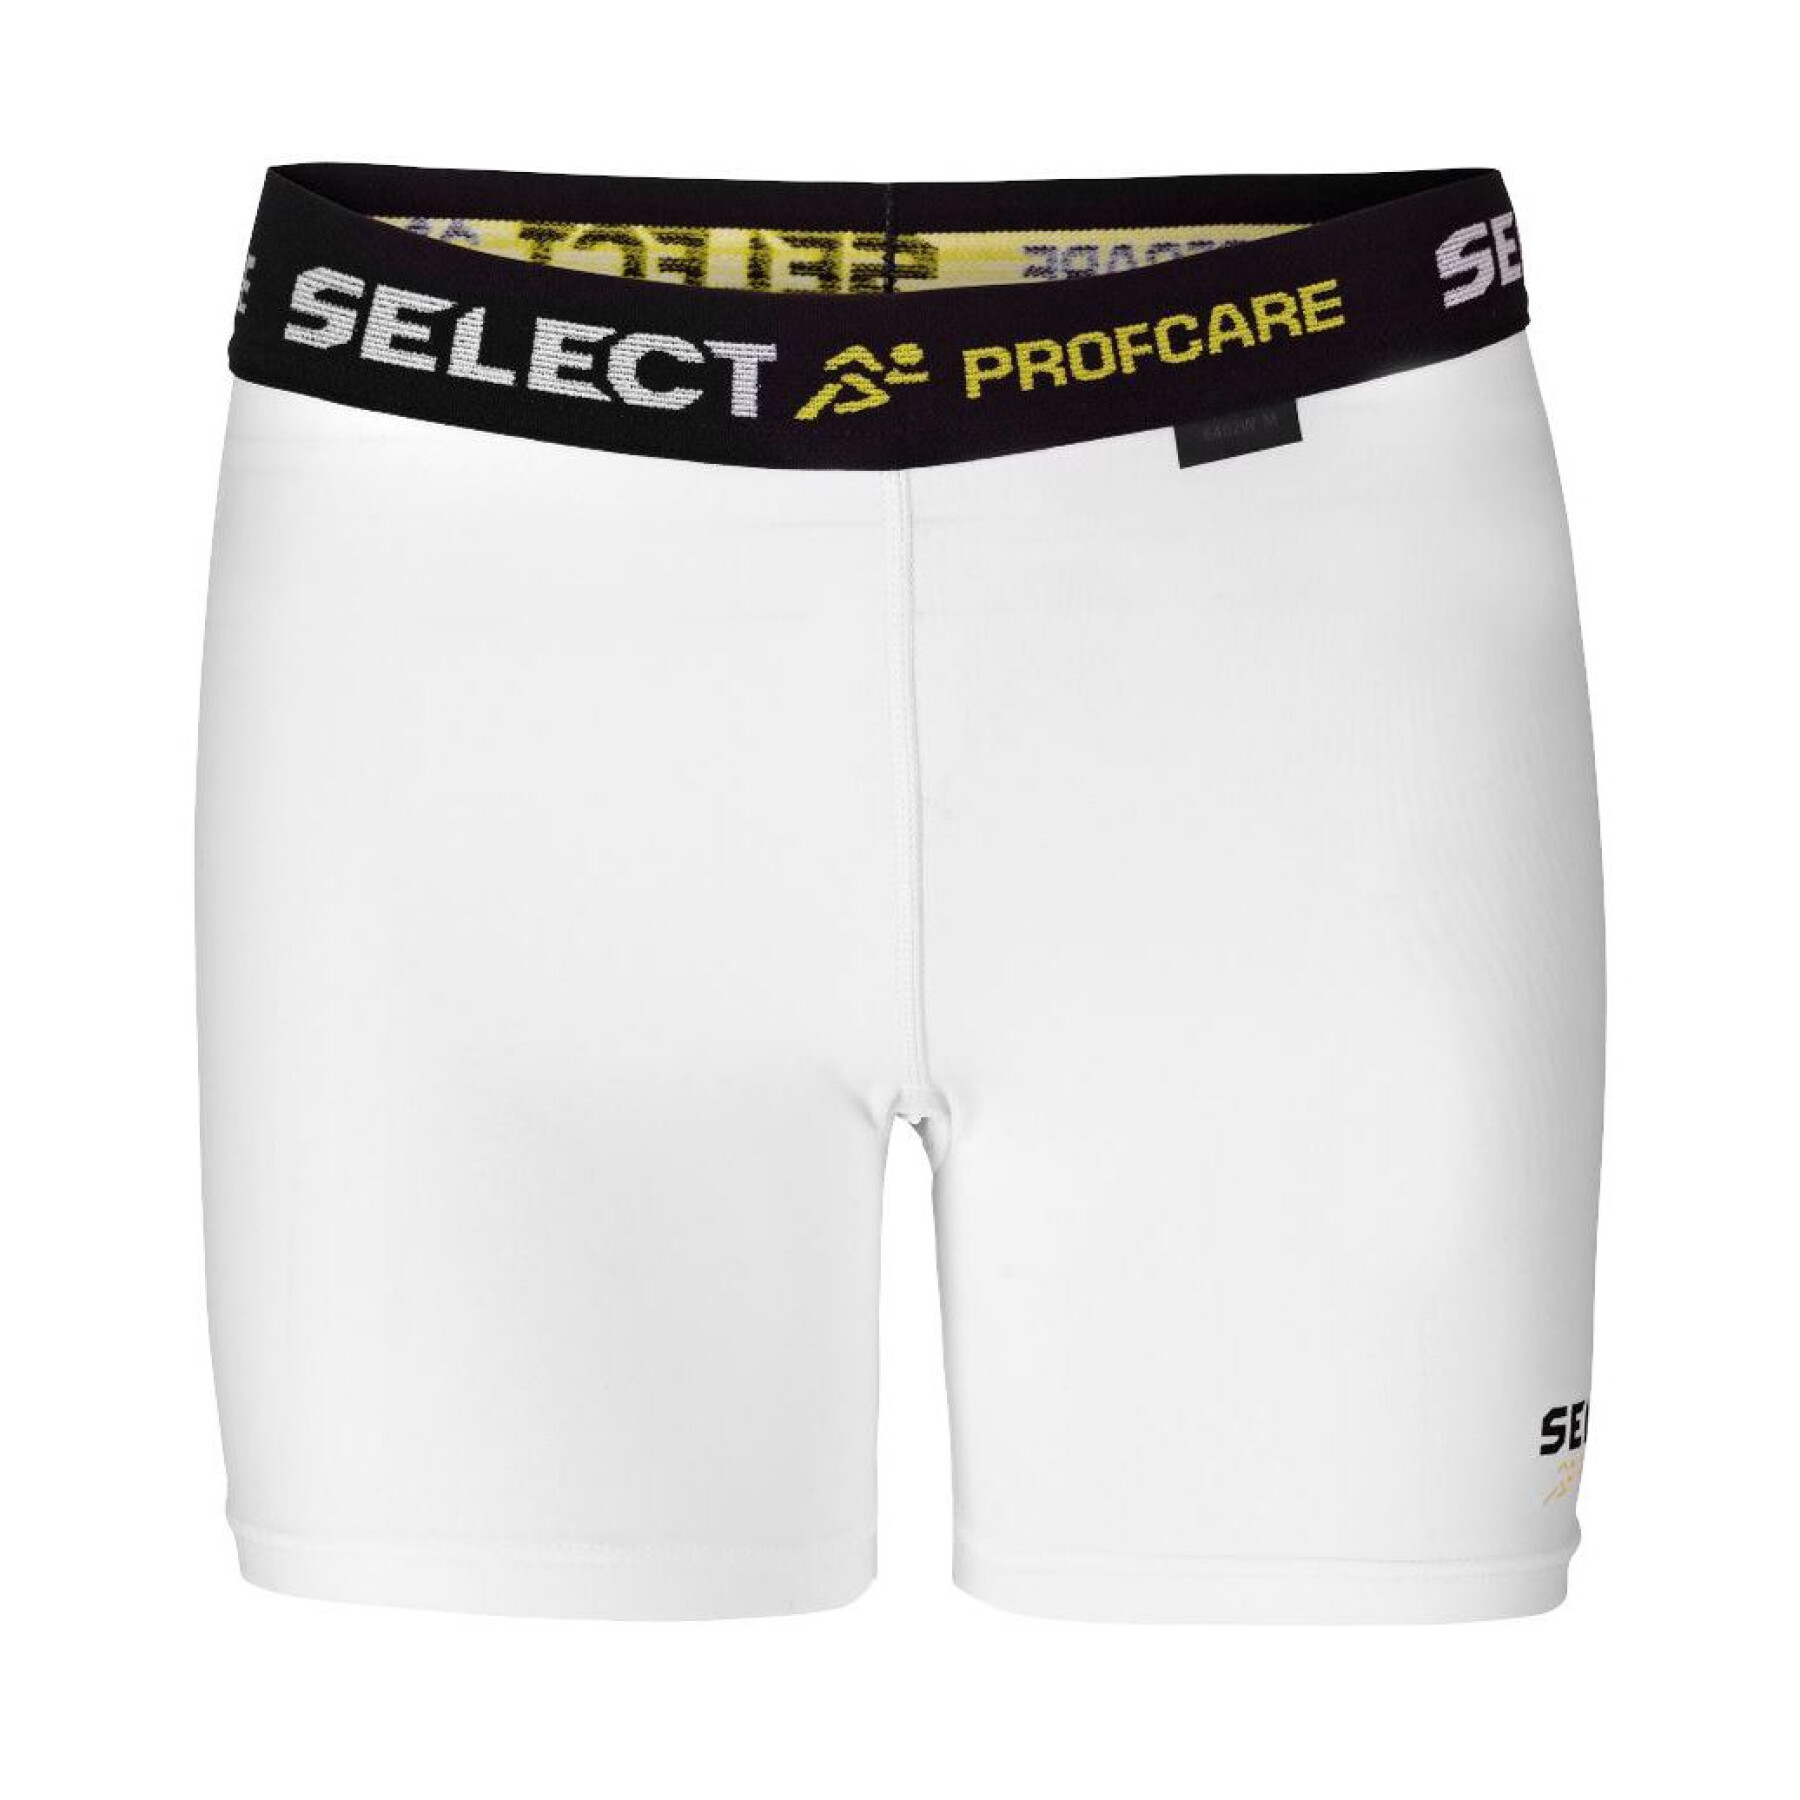 Pantalones cortos de compresión para mujer Select 6402W